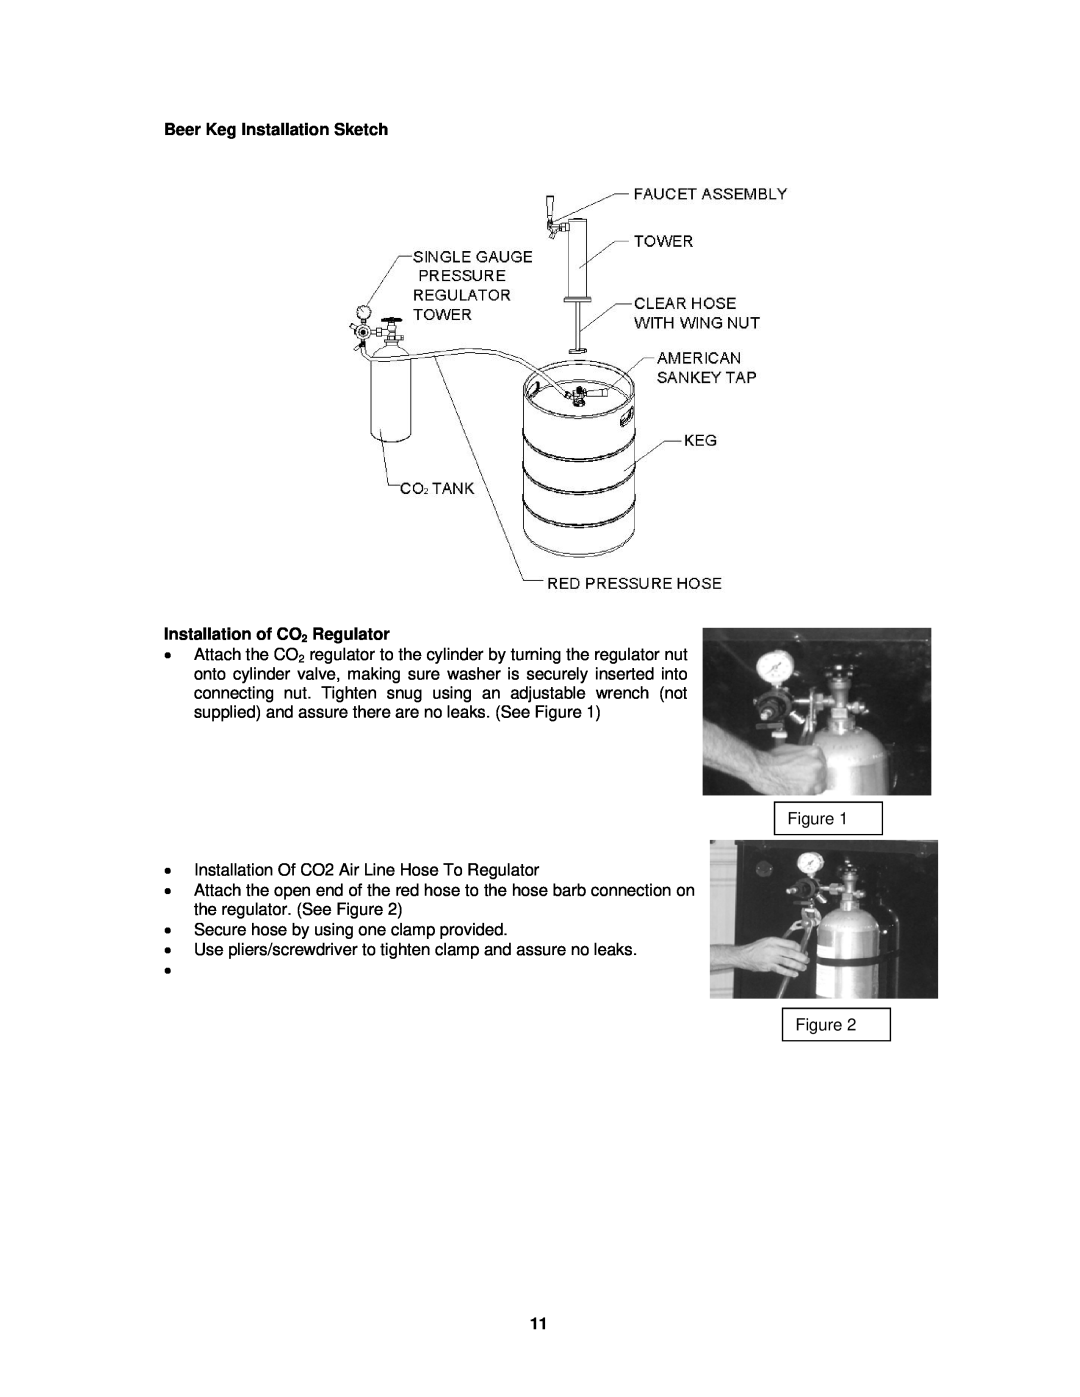 Avanti BD7000 instruction manual Beer Keg Installation Sketch, Installation of CO2 Regulator 